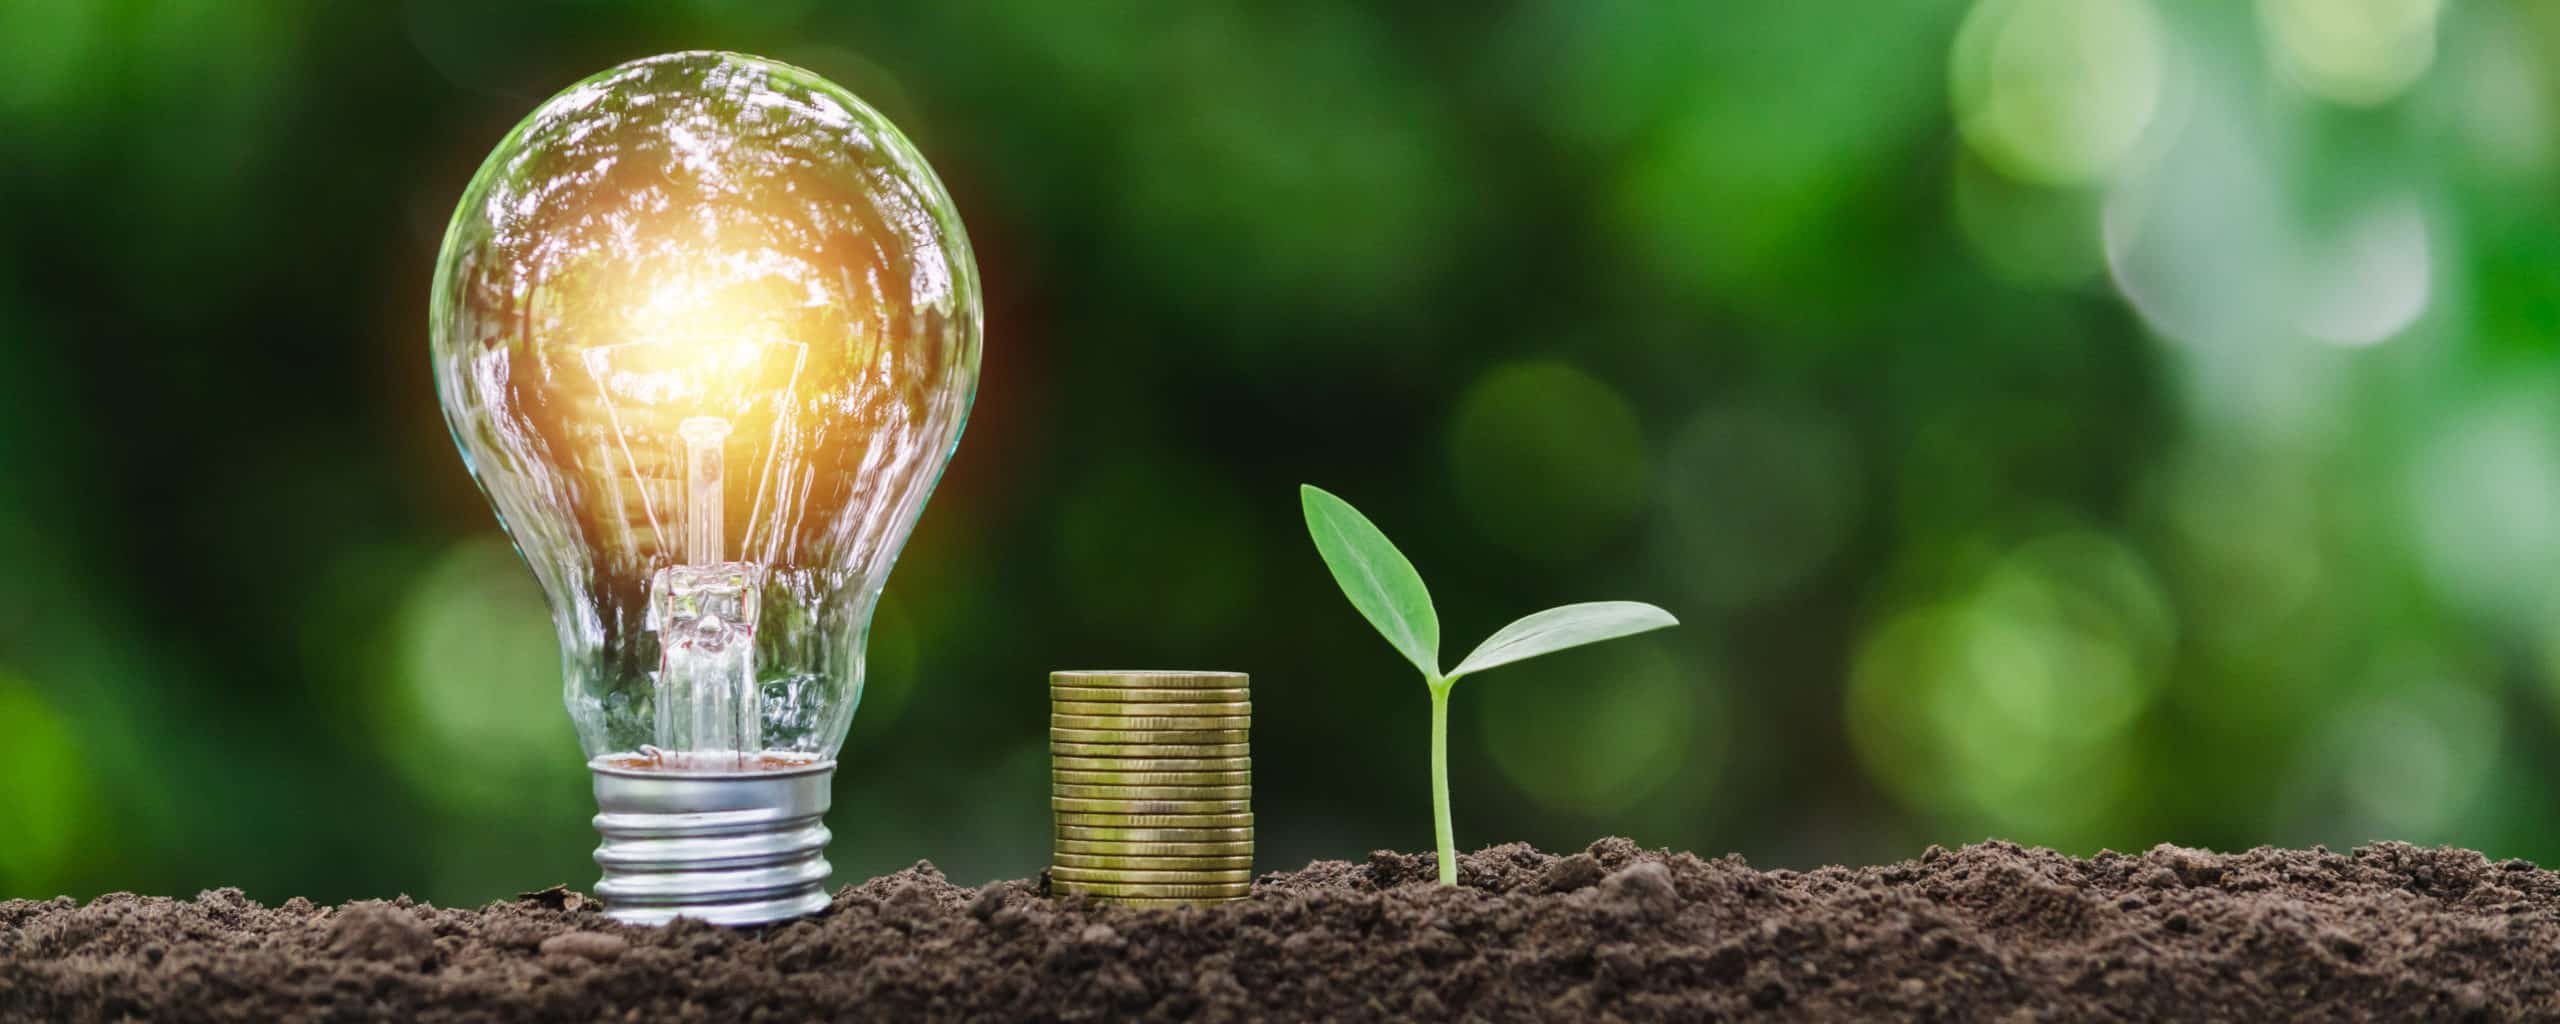 Sustentabilidade empresarial: 5 ideias para aplicar no seu negócio | MR Soluções Ambientais